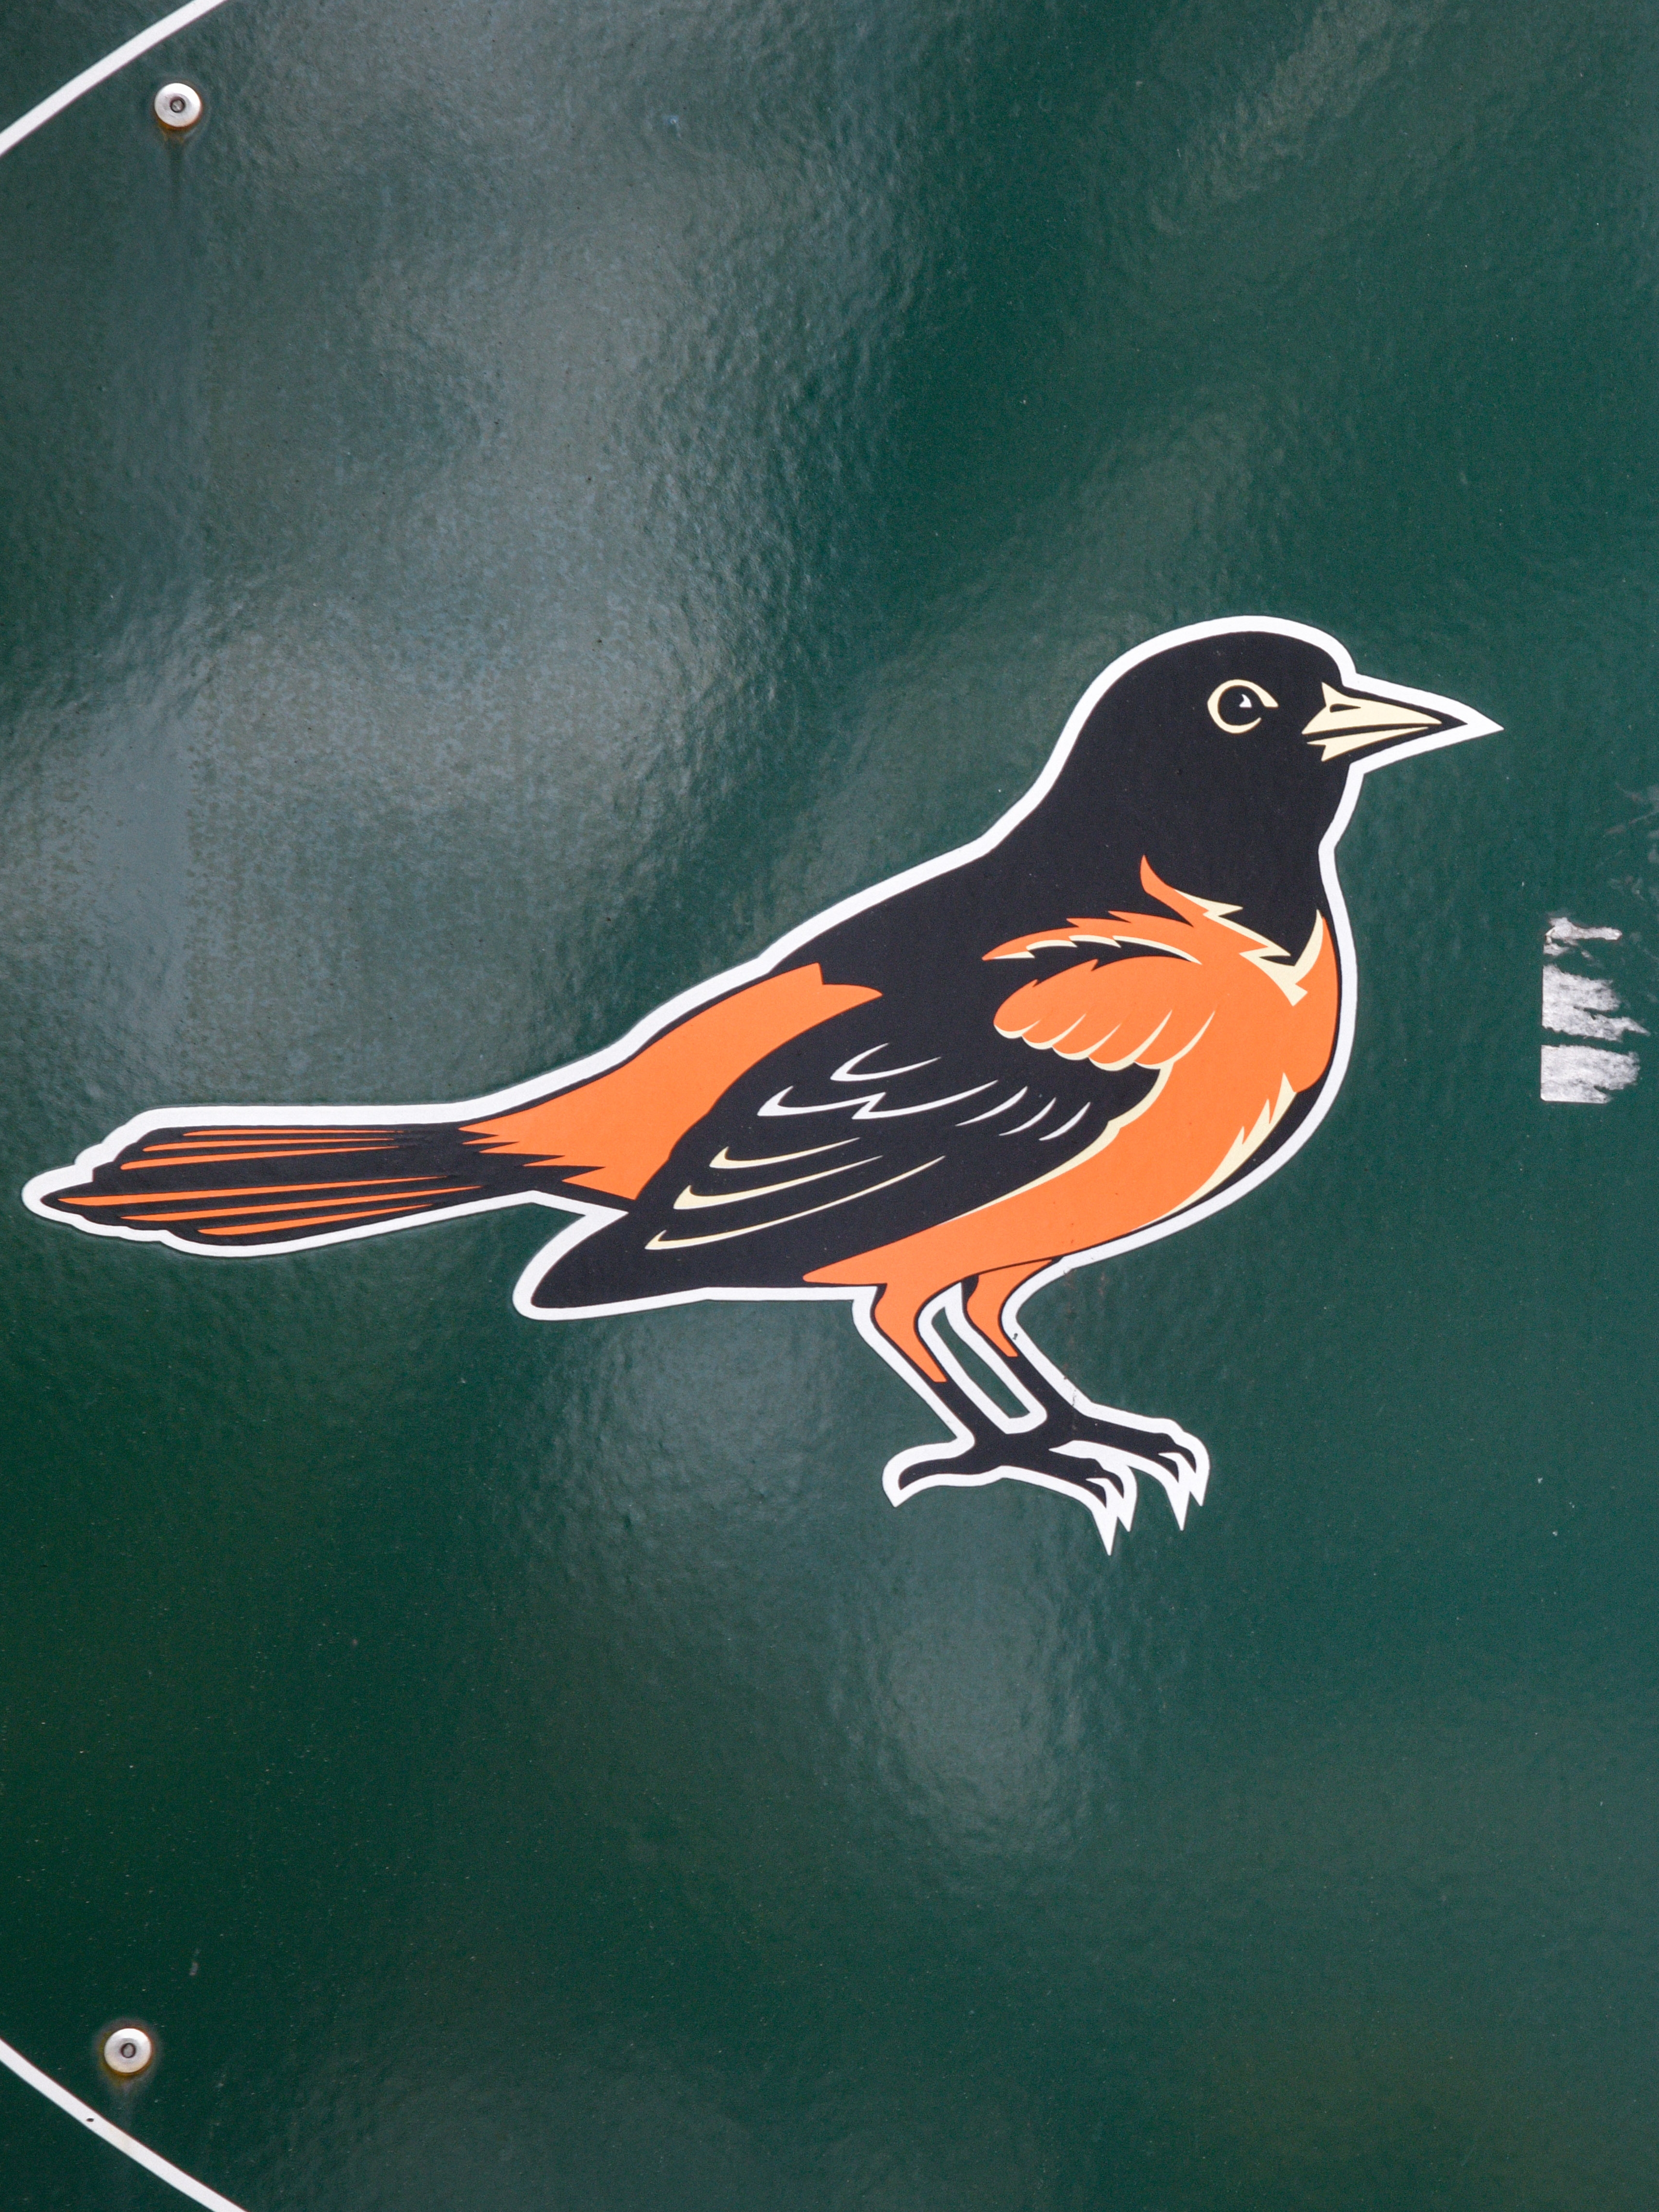 Baltimore Orioles logo at Camden Yards